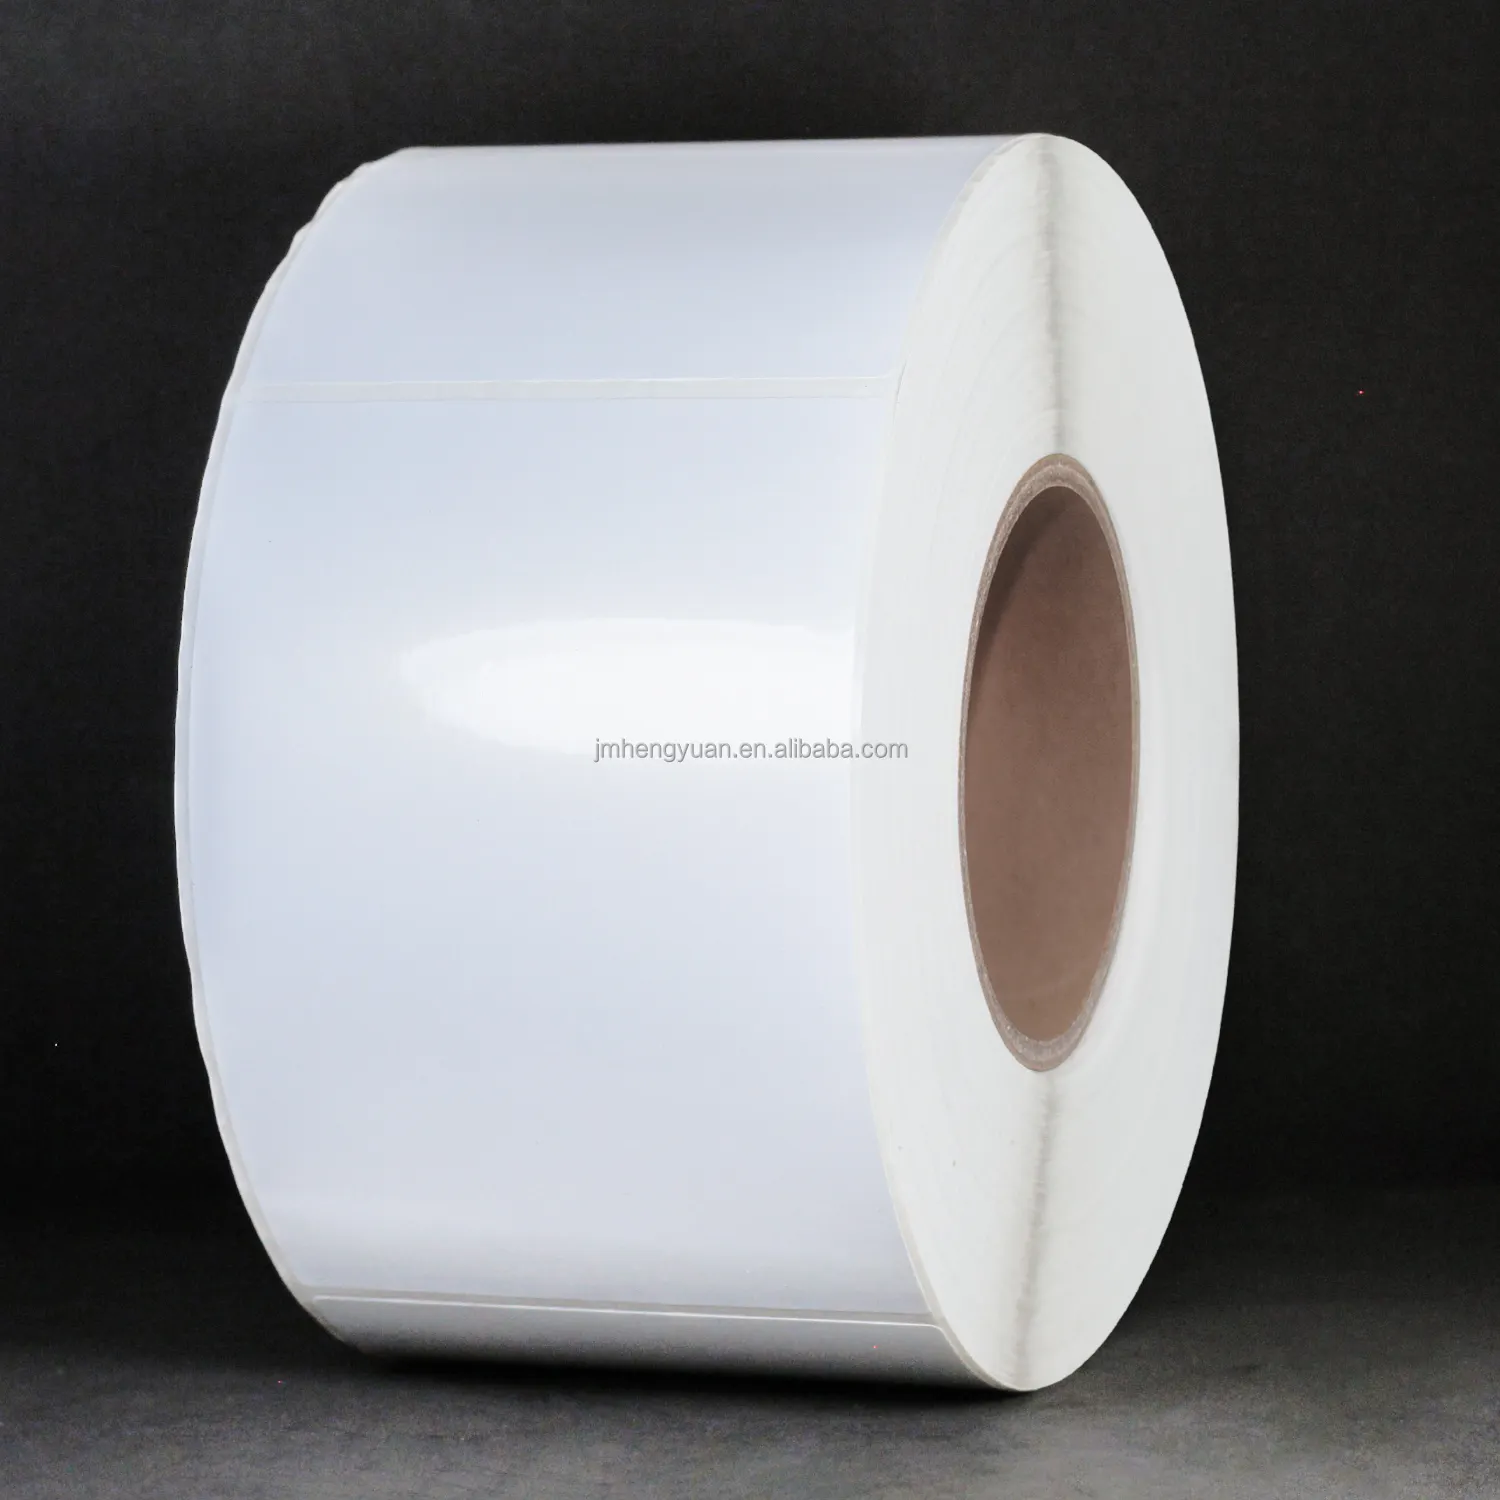 Adesivo personalizzato bianco lucido/opaco per stampante a getto d'inchiostro adesivo per etichette Bopp continuo lucido alto per stampante a getto d'inchiostro